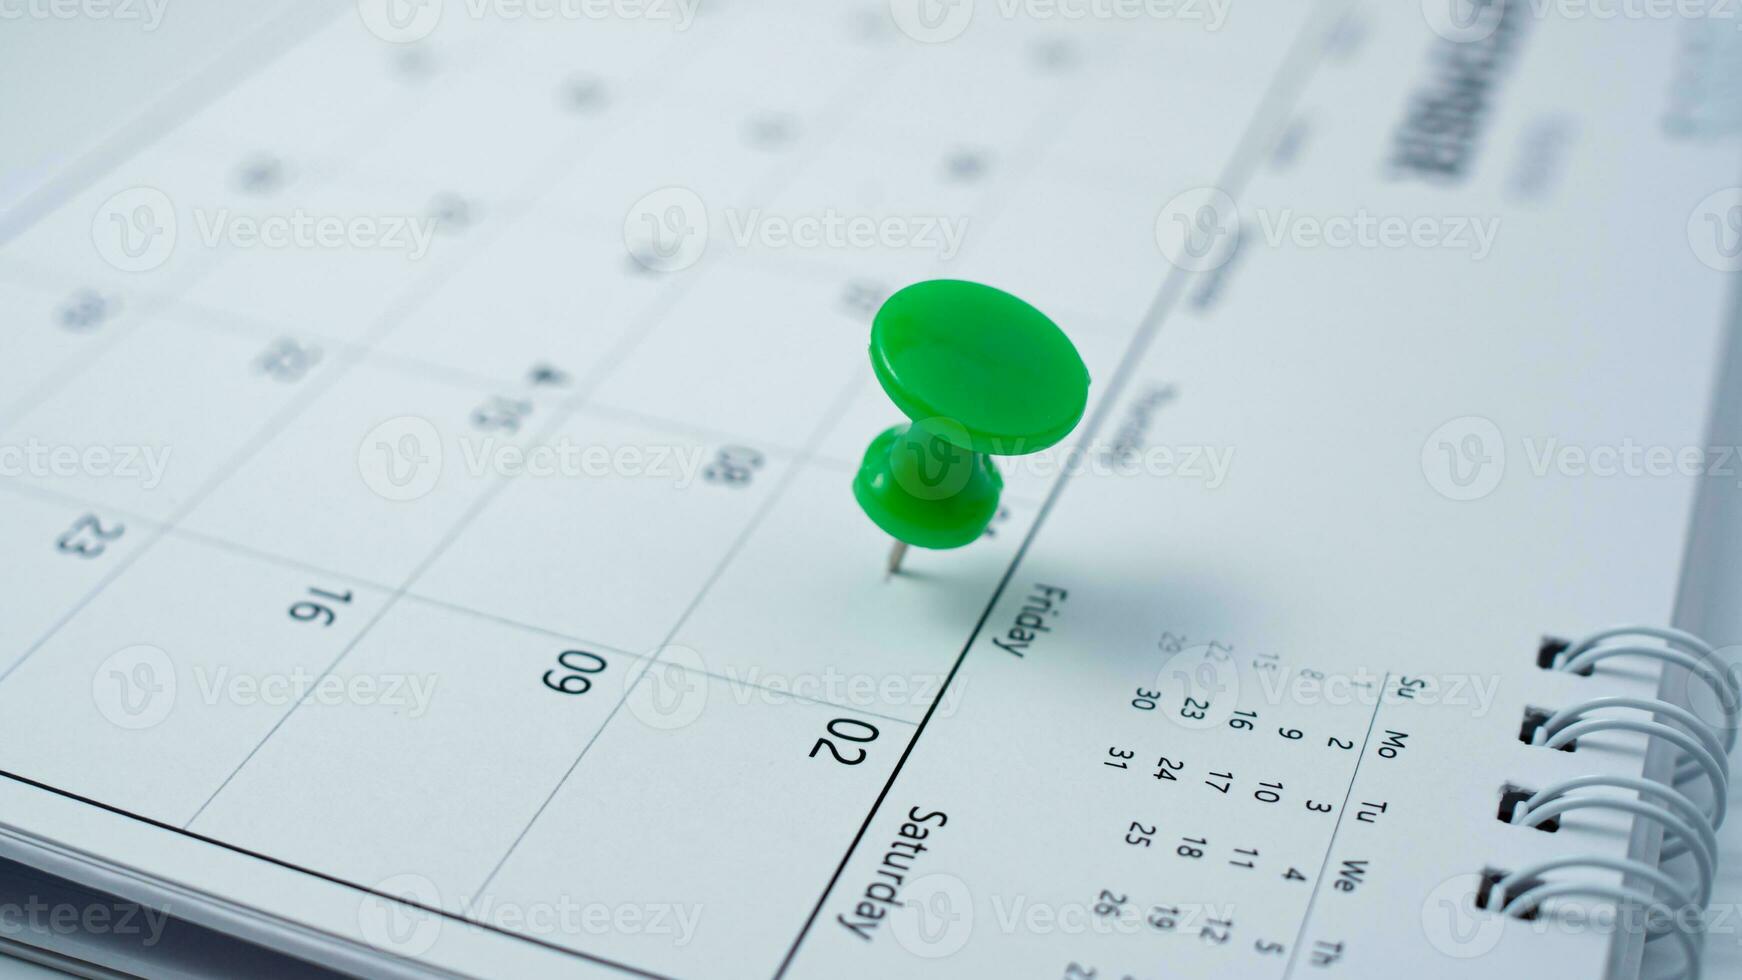 vastzetten naar de kalender het vertegenwoordigt afspraken, vergadering herinneringen, planning voor bedrijf vergaderingen en reizen planning concepten. foto